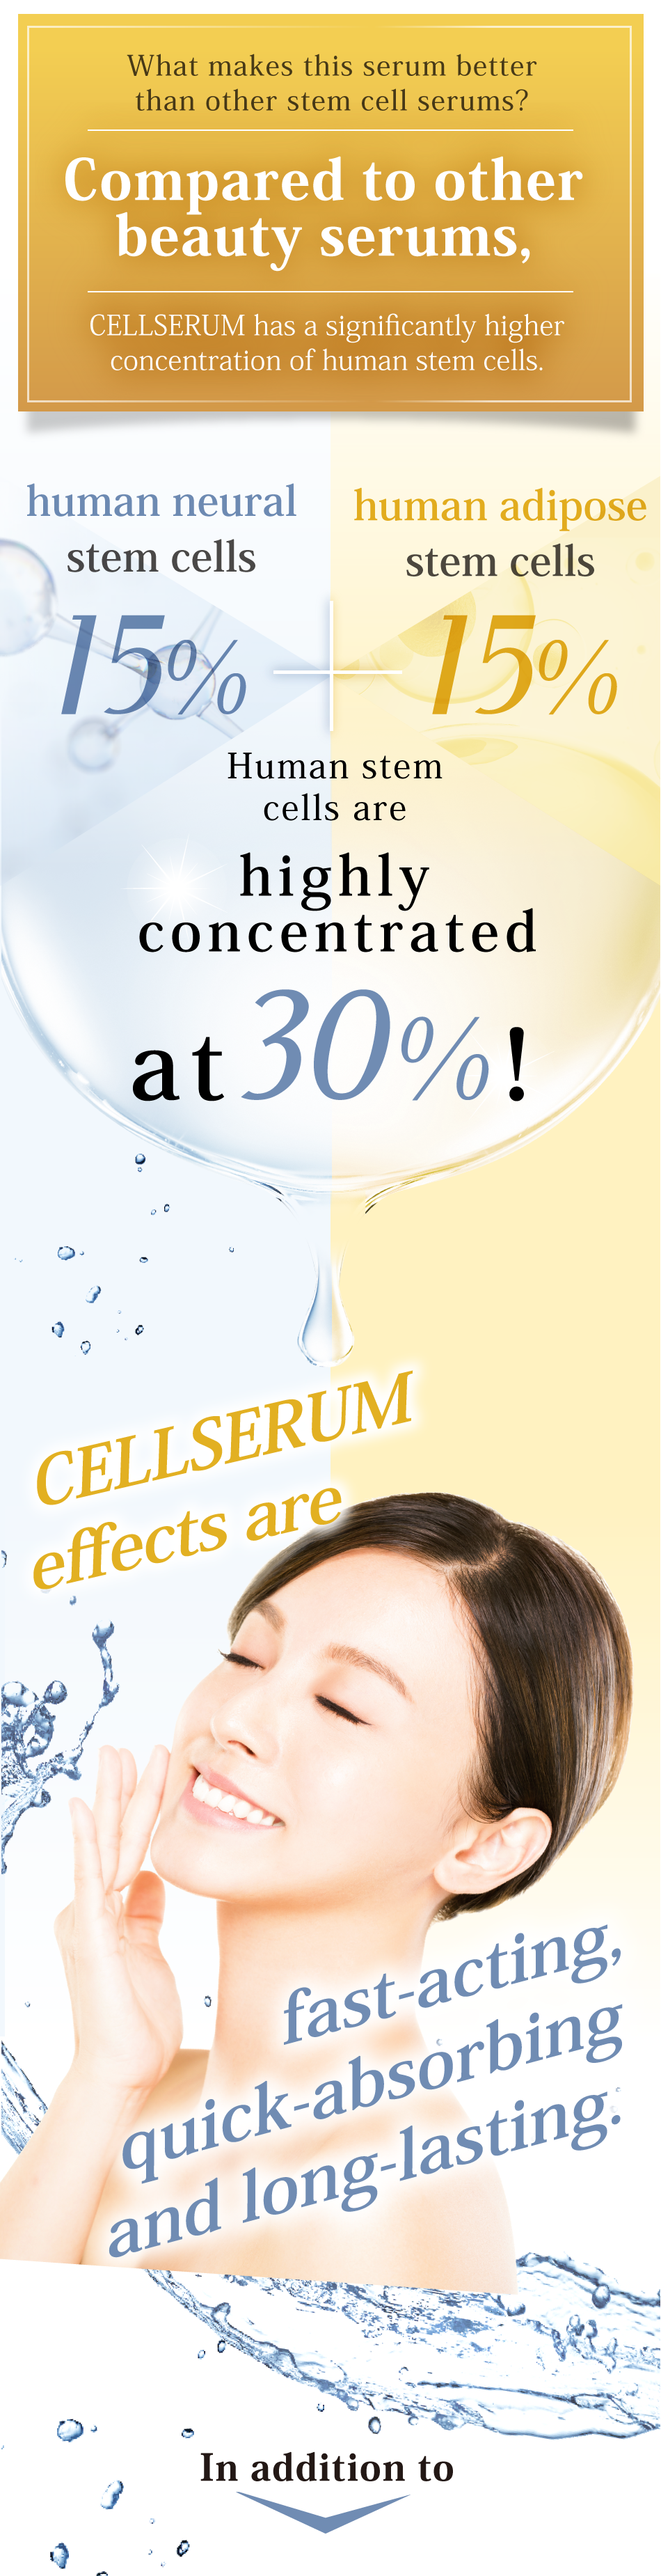 他の幹細胞美容液との違いは? CELLSERUMは他のヒト幹細胞美容液と 濃度が違う。ヒト神経幹細胞15% ヒト脂肪幹細胞 15%  ヒト脂肪 幹細胞15%  合わせてヒト幹細胞を 30%の高配合！だから実感力が、高い、早い、続く。さらに